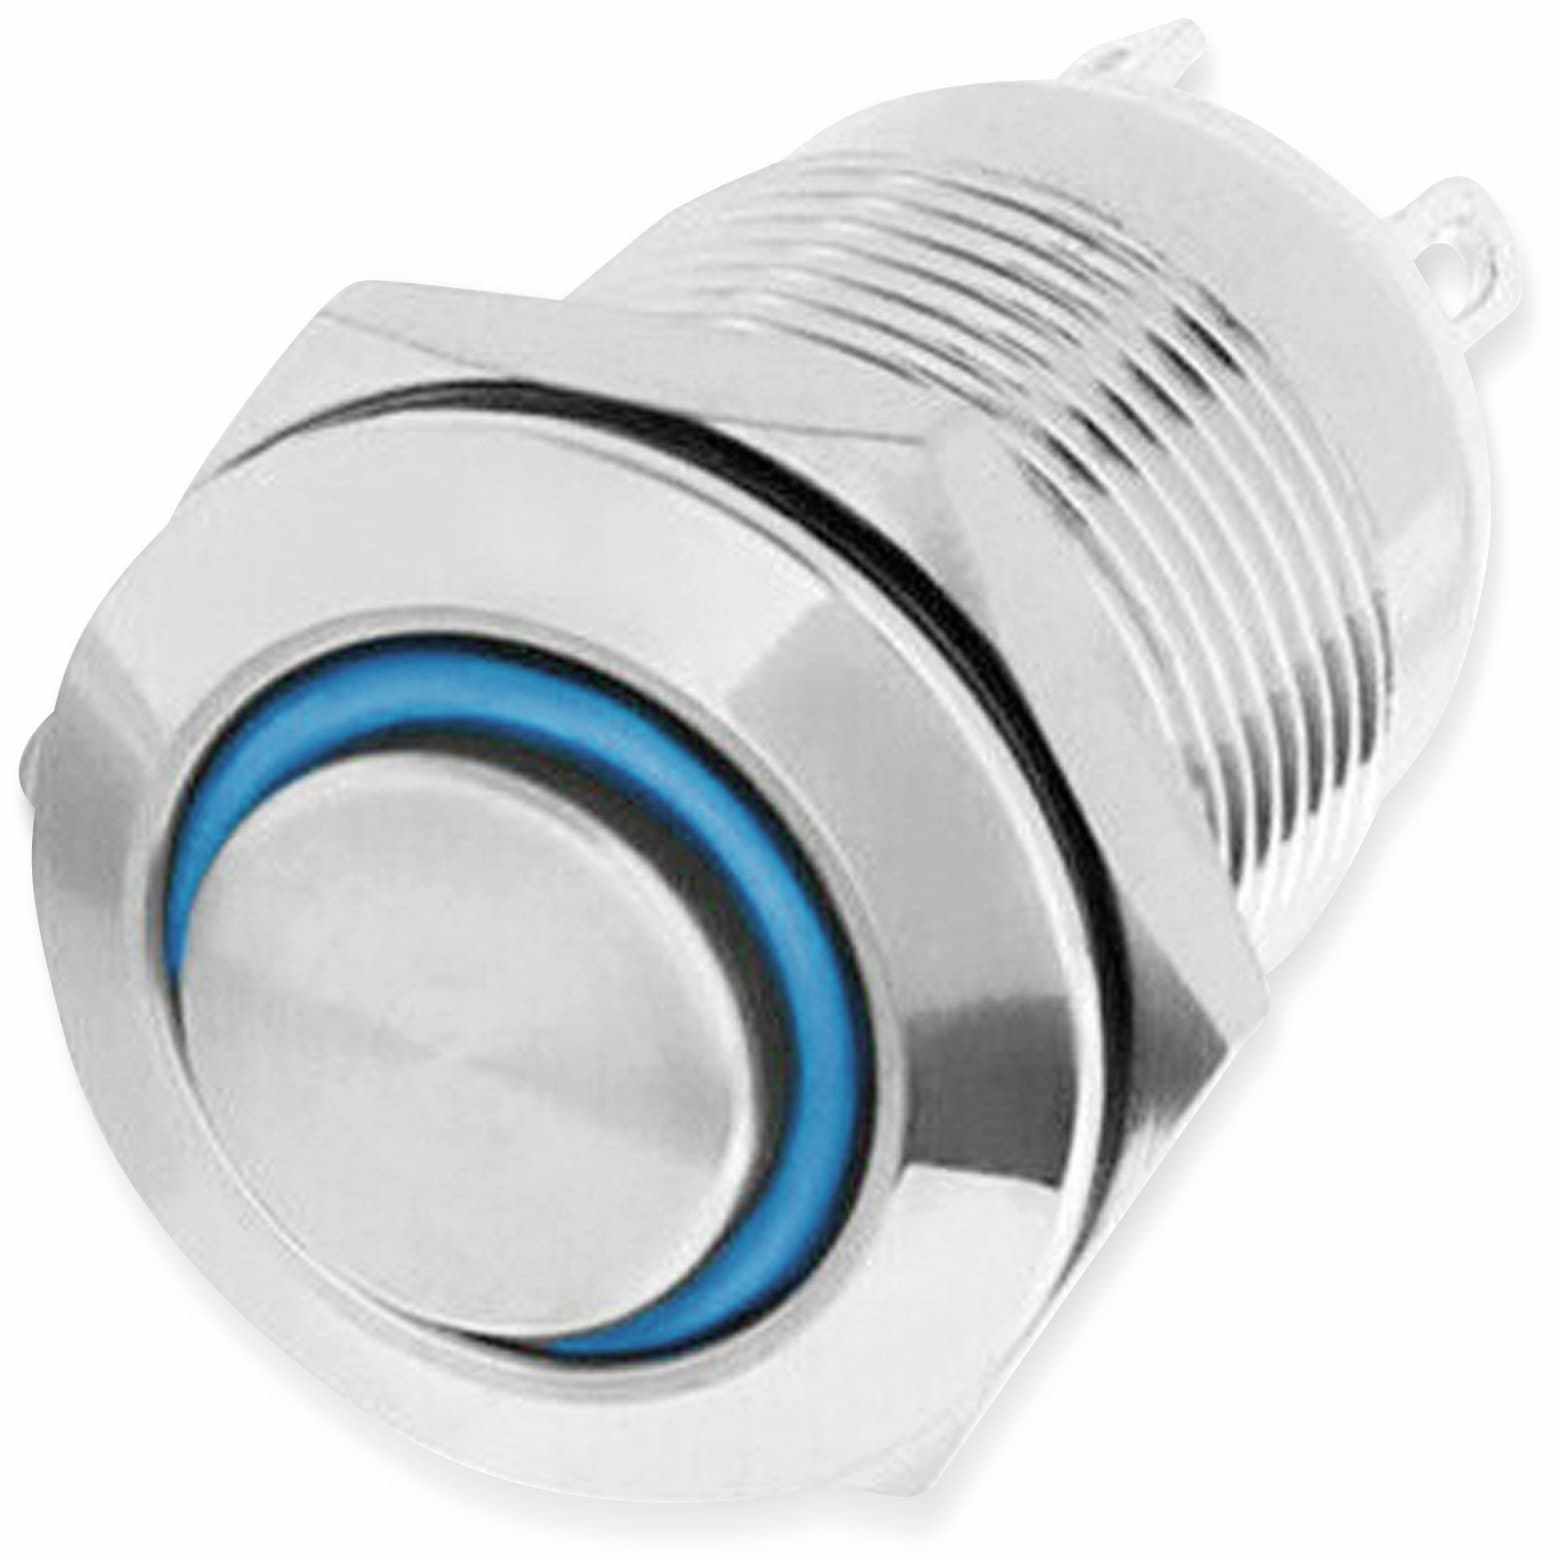 LED-Drucktaster, Ringbeleuchtung blau 12 V, Ø12 mm, 2 A/48 V